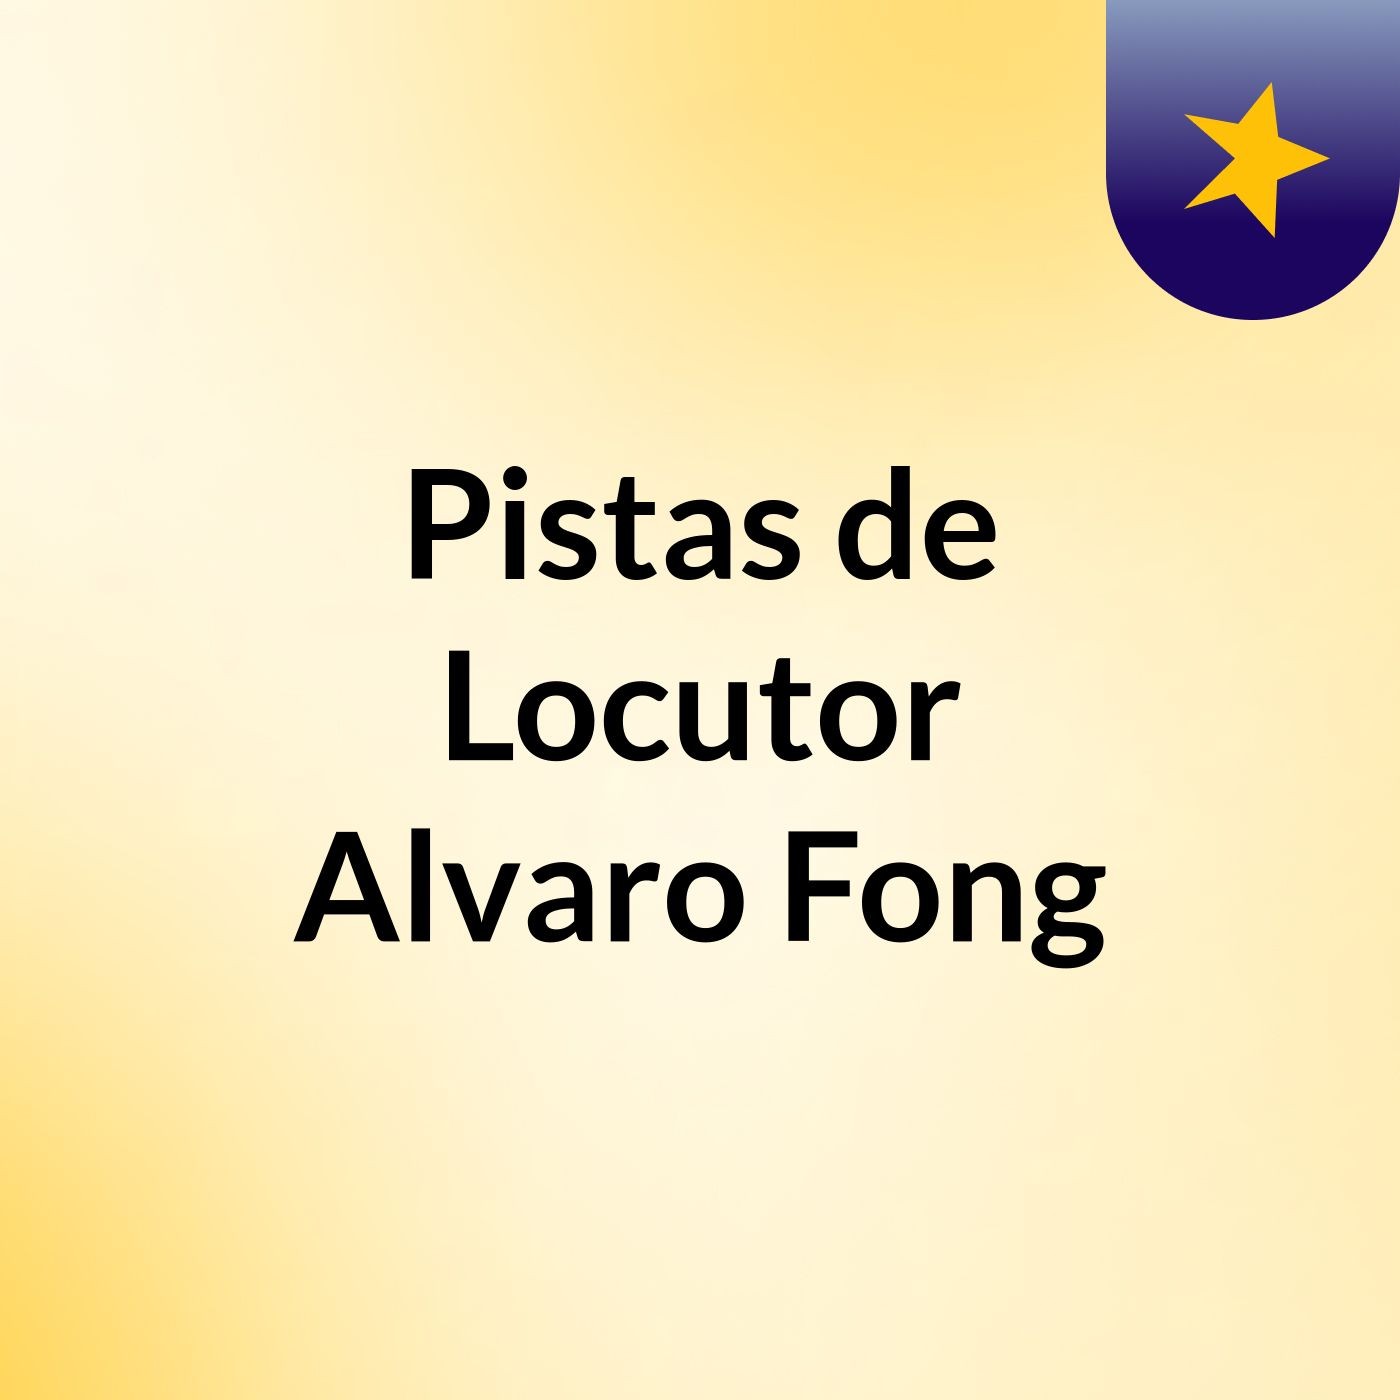 Pistas de Locutor Alvaro Fong